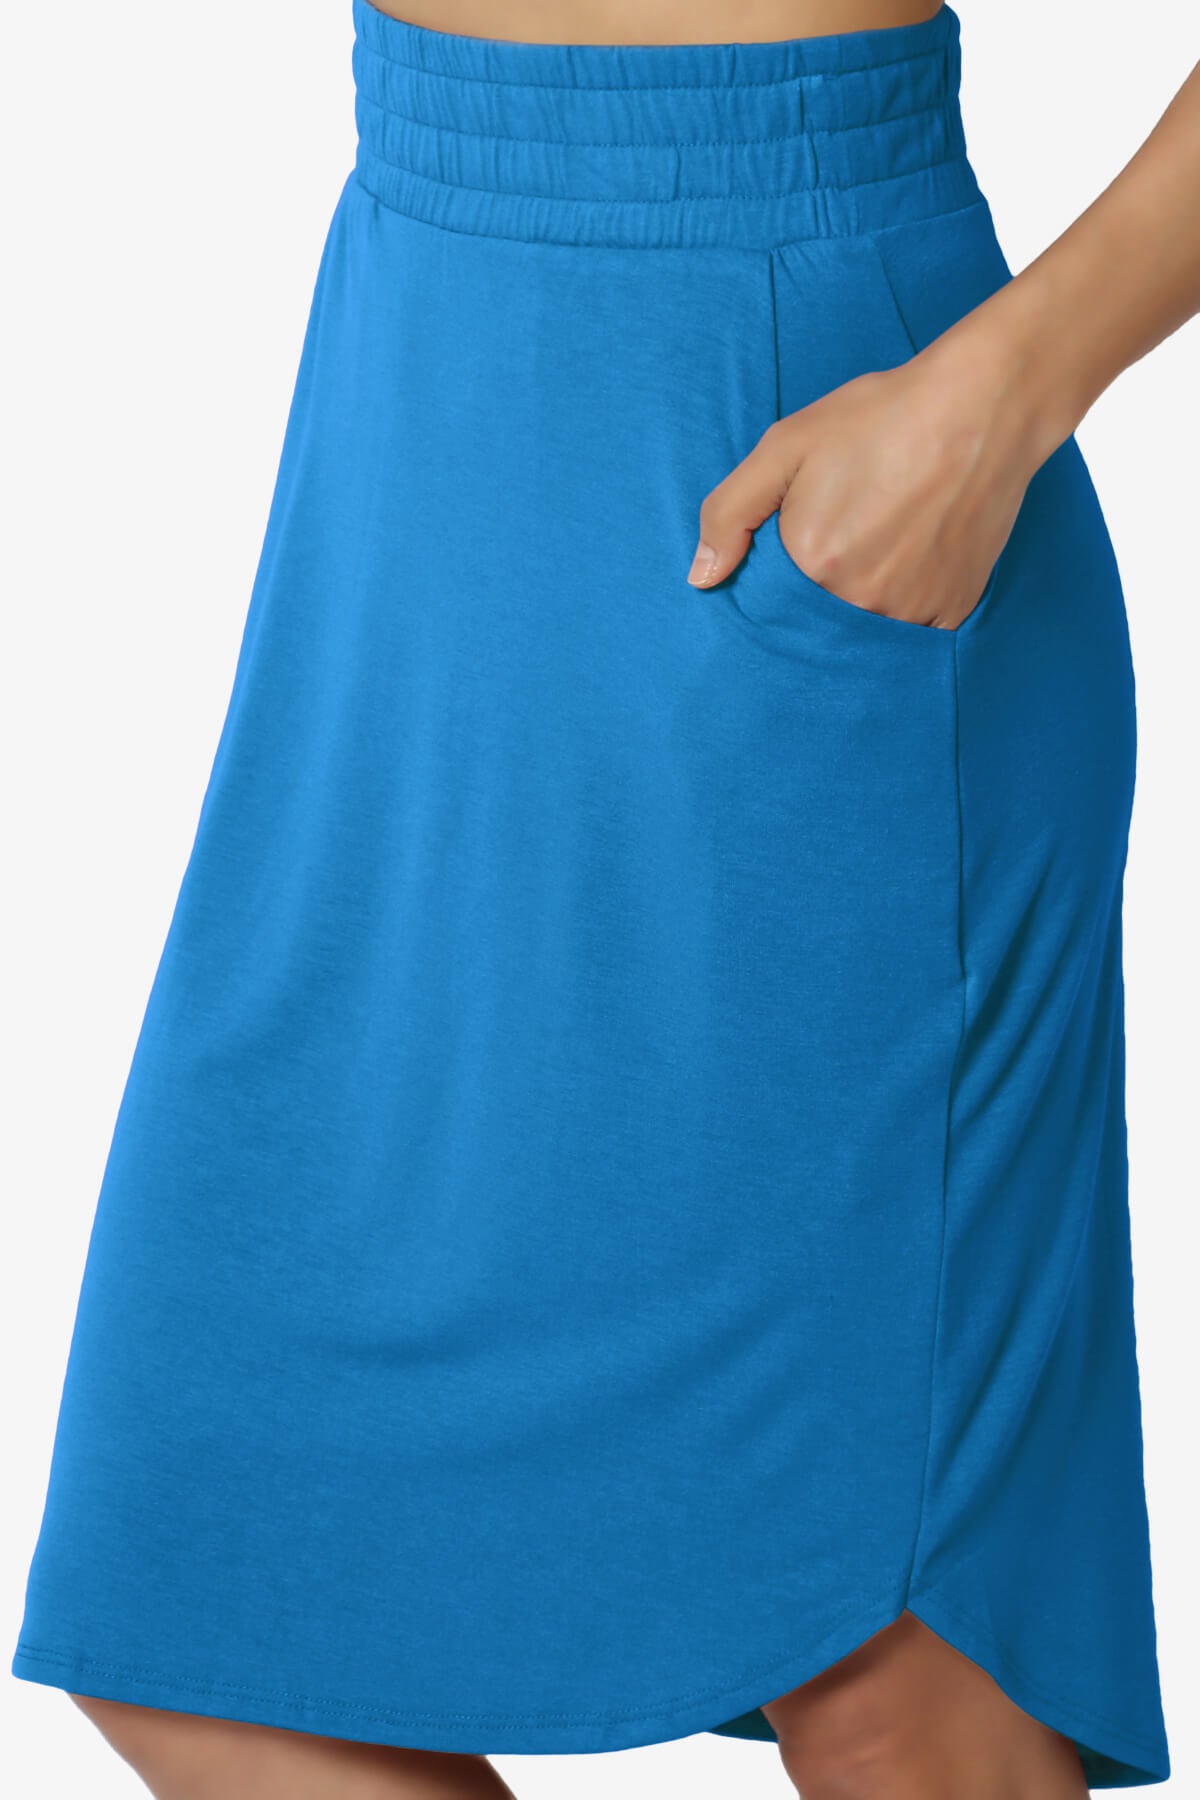 Hadyn Casual Elastic High Waist Straight Skirt OCEAN BLUE_5